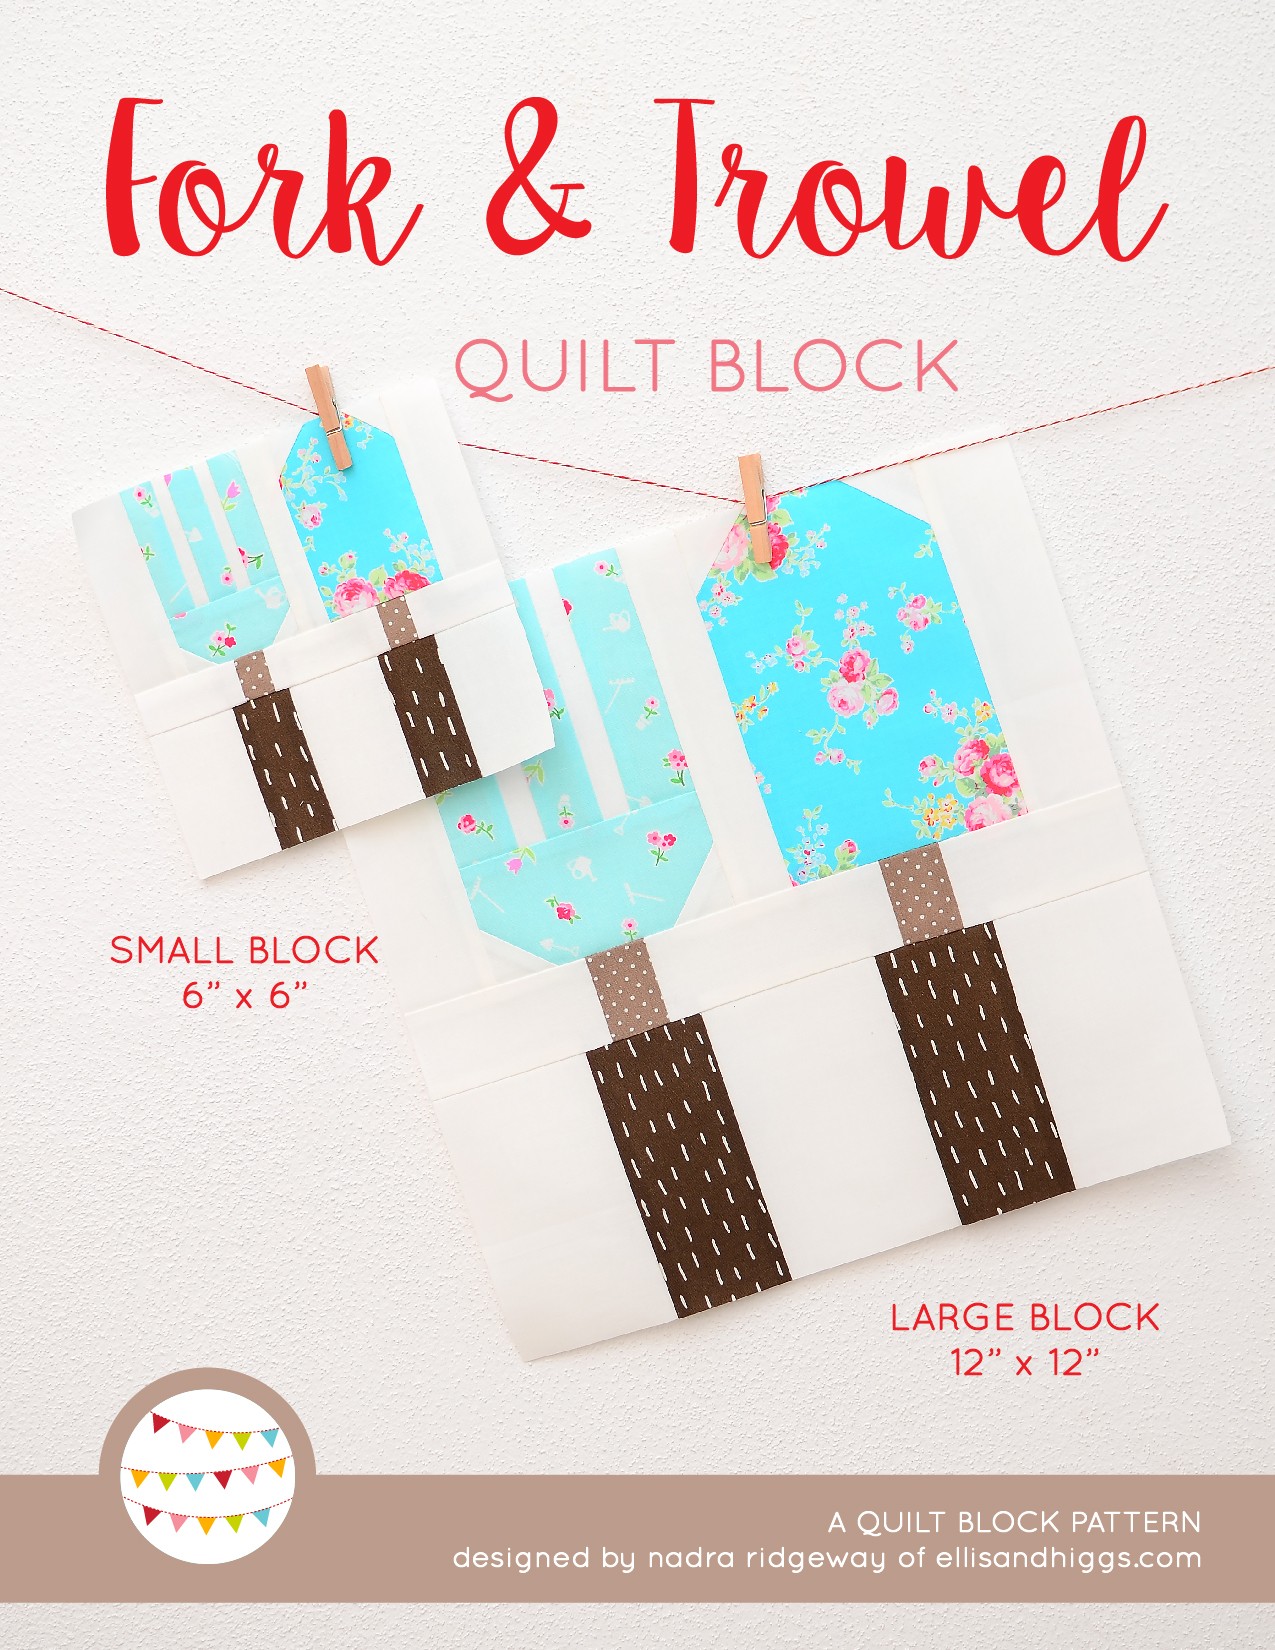 Fork & Trowel quilt blocks